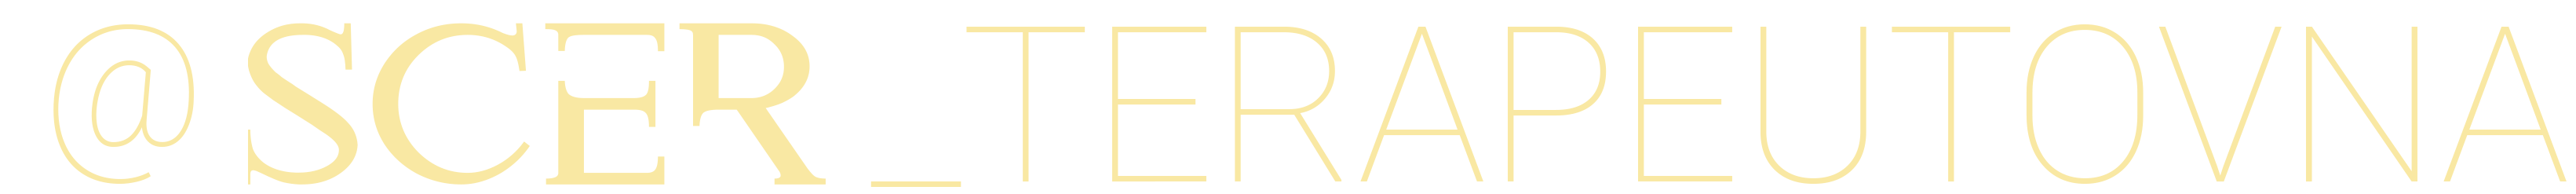 logo@SCer_Terapeutovna